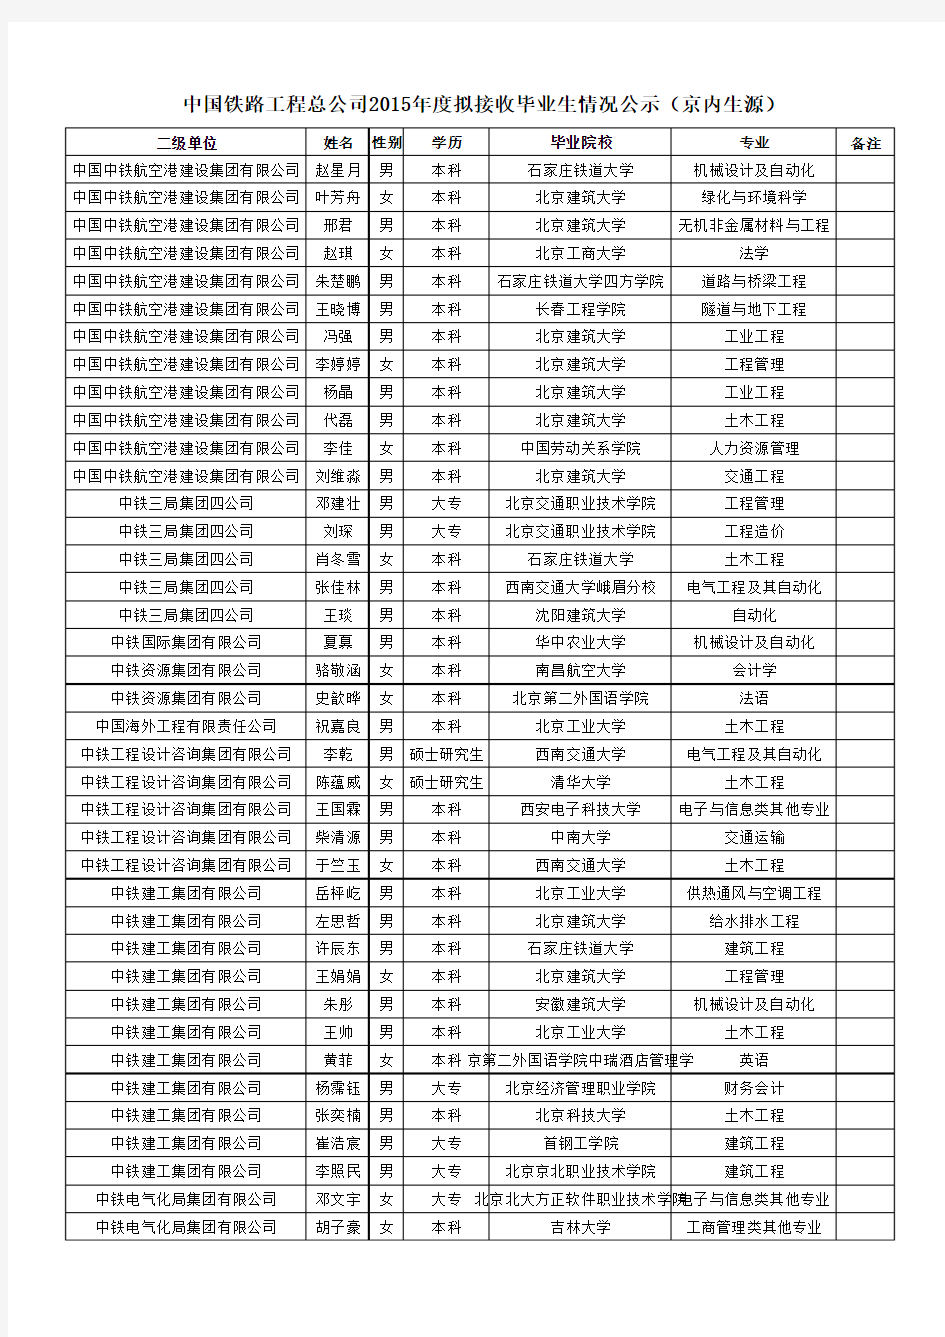 中国铁路工程总公司2015年度接收进京毕业生情况公示